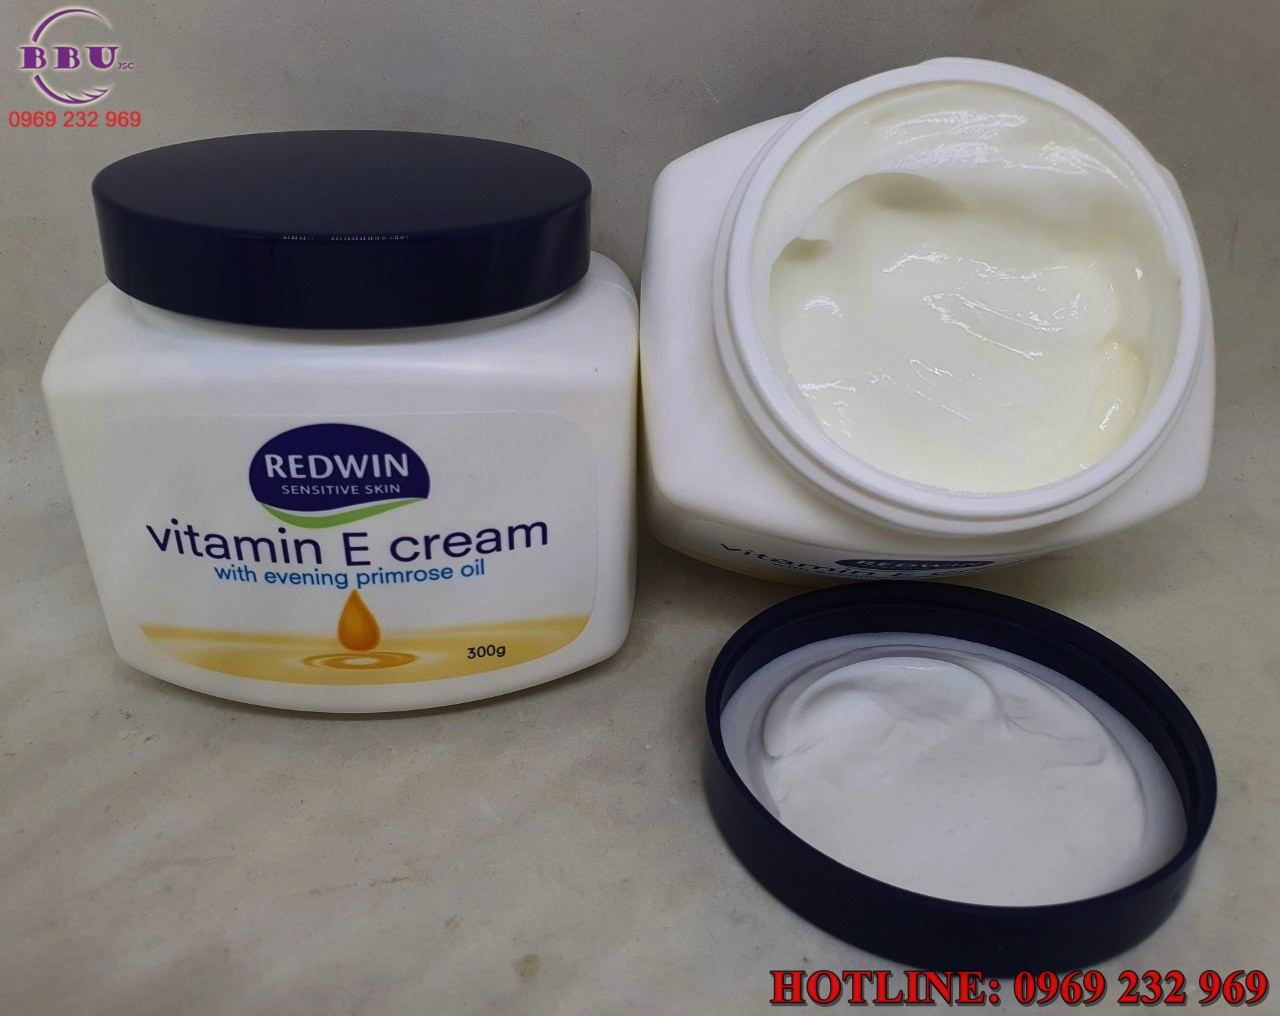 Giới thiệu về sản phẩm kem dưỡng vitamin E Redwin Úc